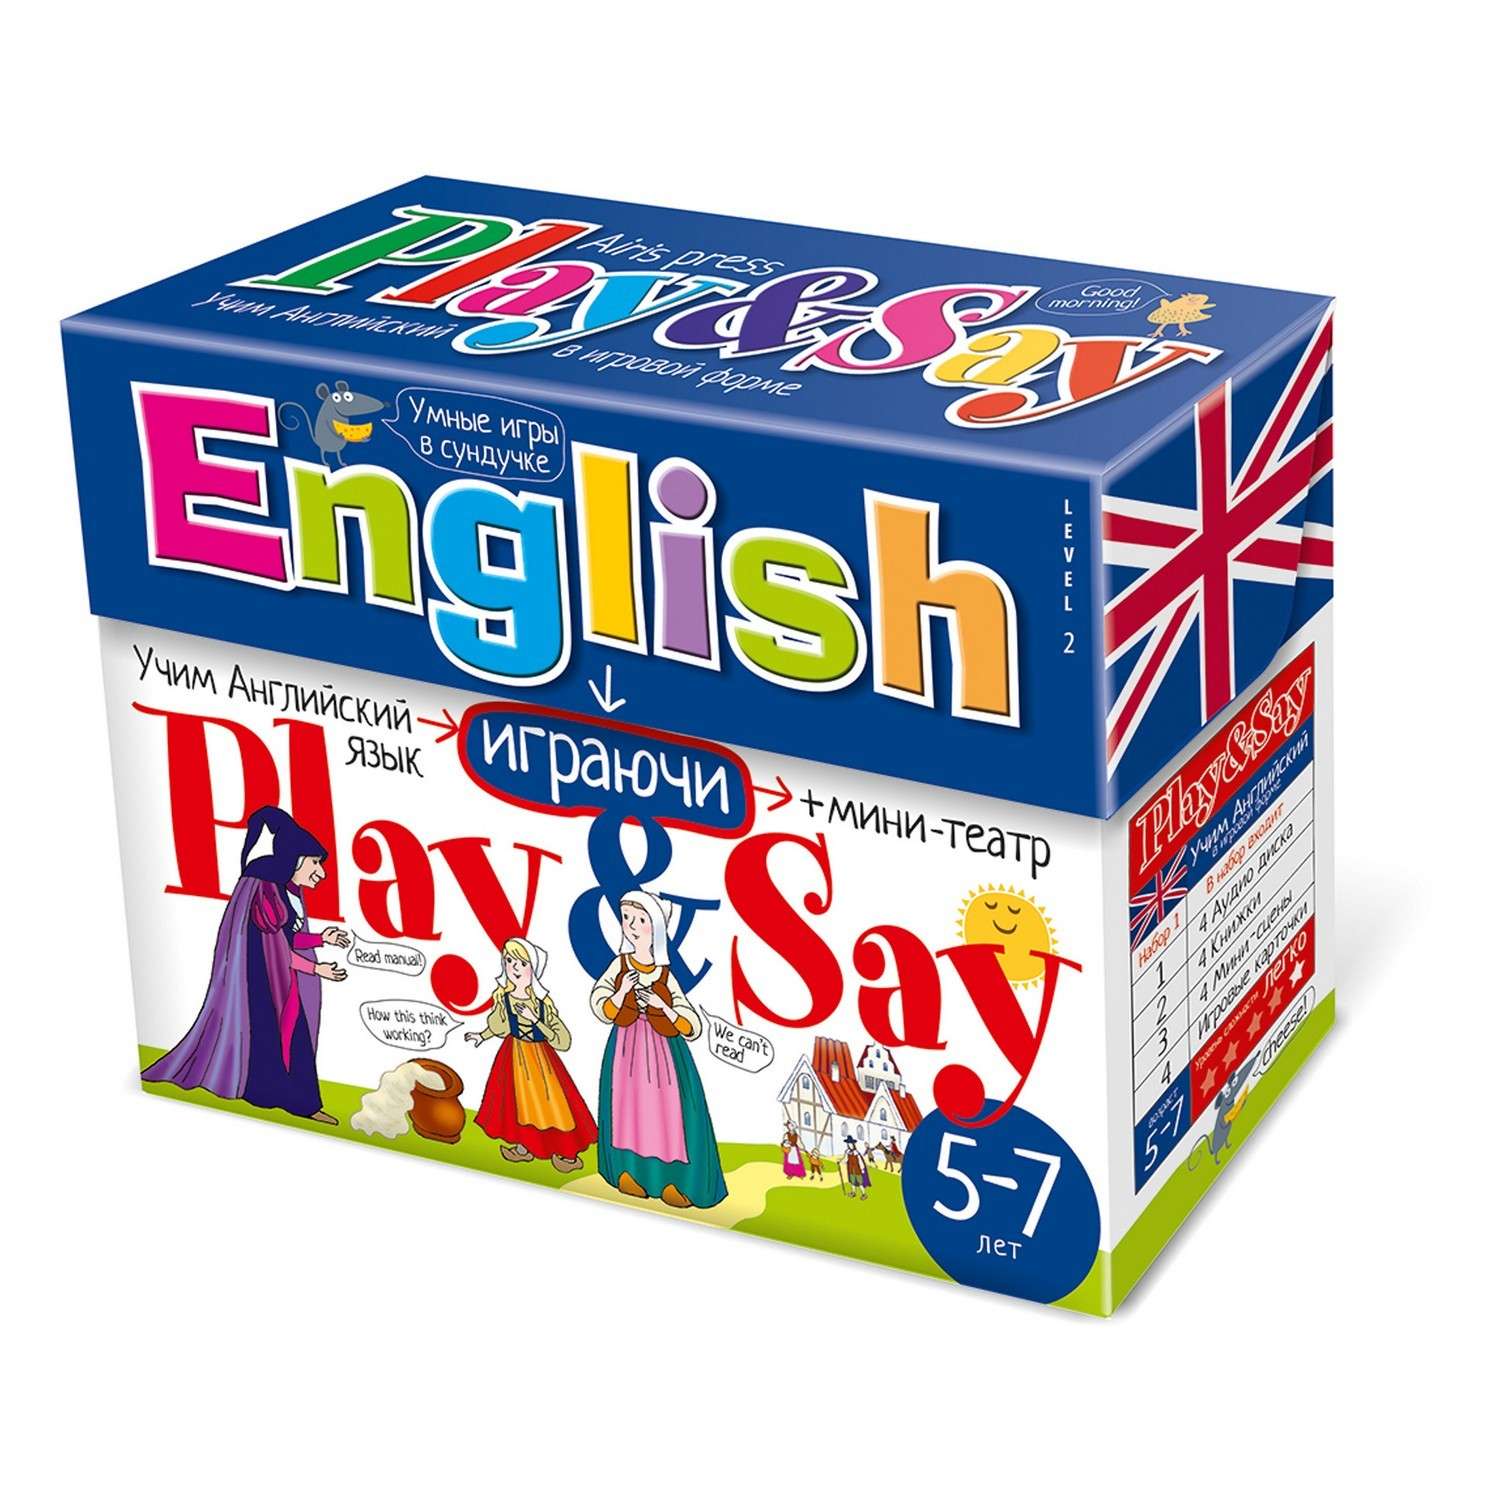 Игрушки для изучения английского языка для детей. Набор по английскому языку для малышей. Учим английский игра. Английский играючи для детей.